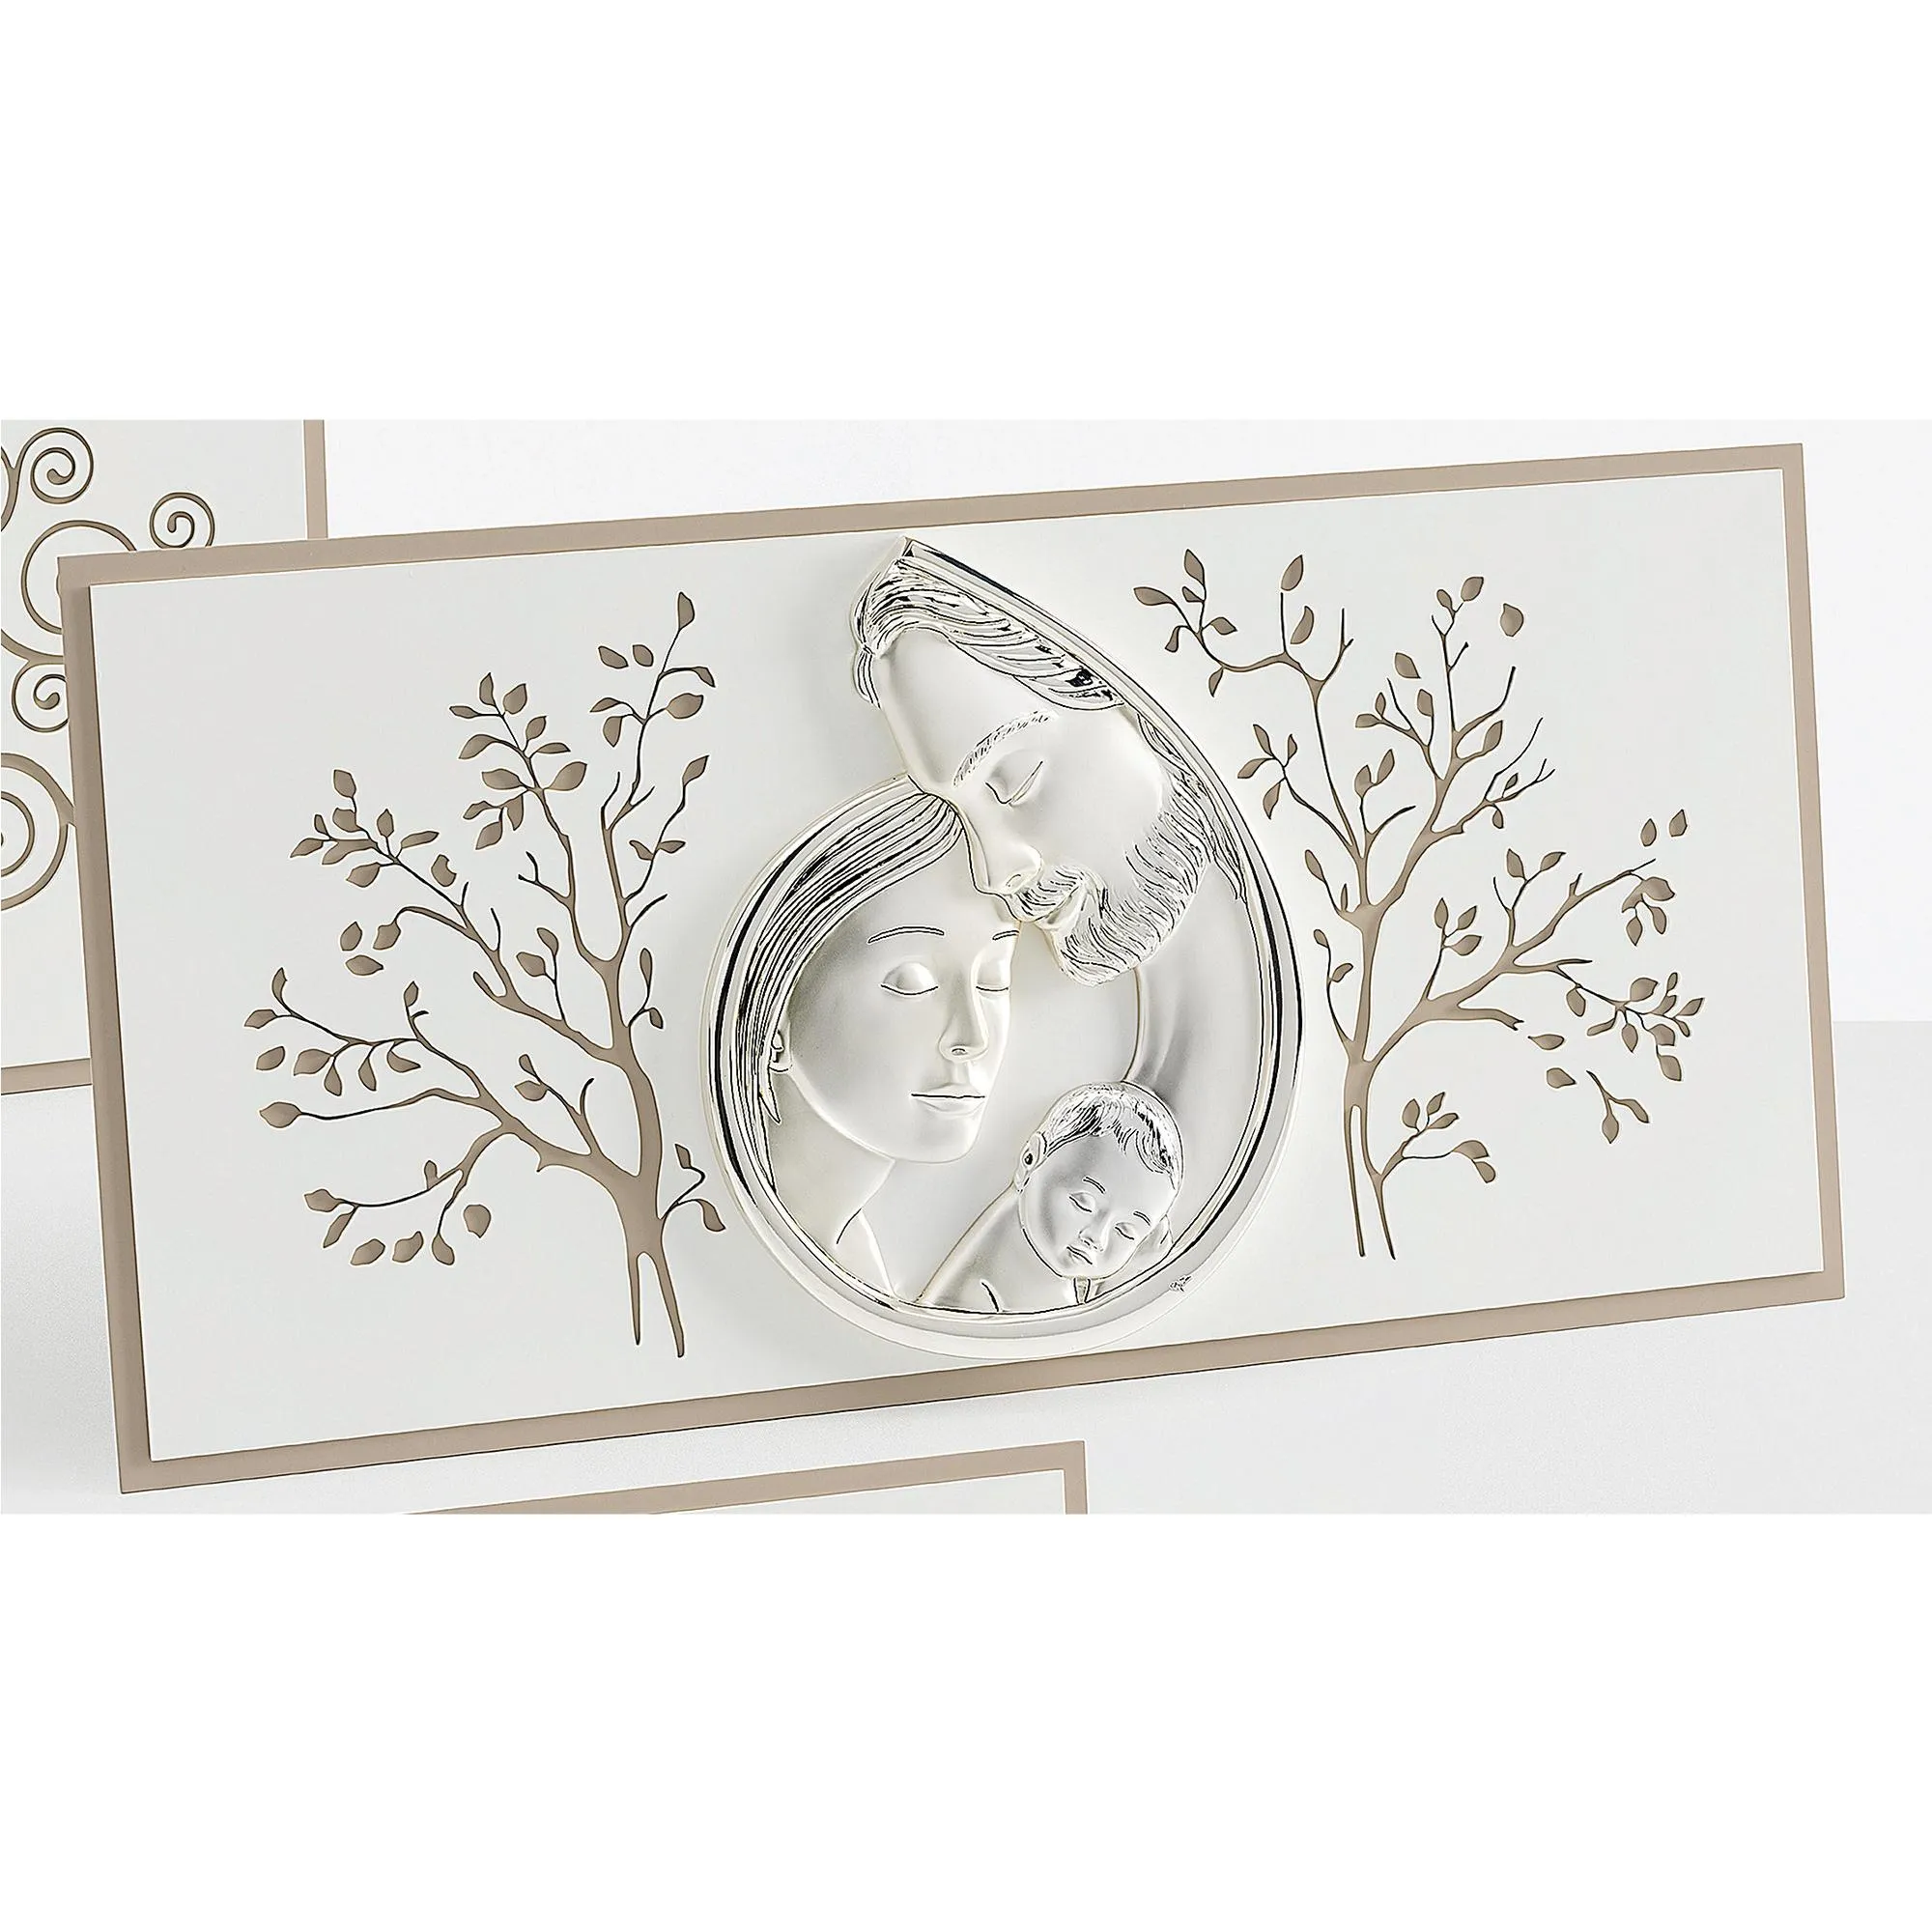 Capoletto, Quadro Sacra Famiglia base in legno ed immagine in argento, Foglie 80xh40 cm cm può essere appeso o appoggiato